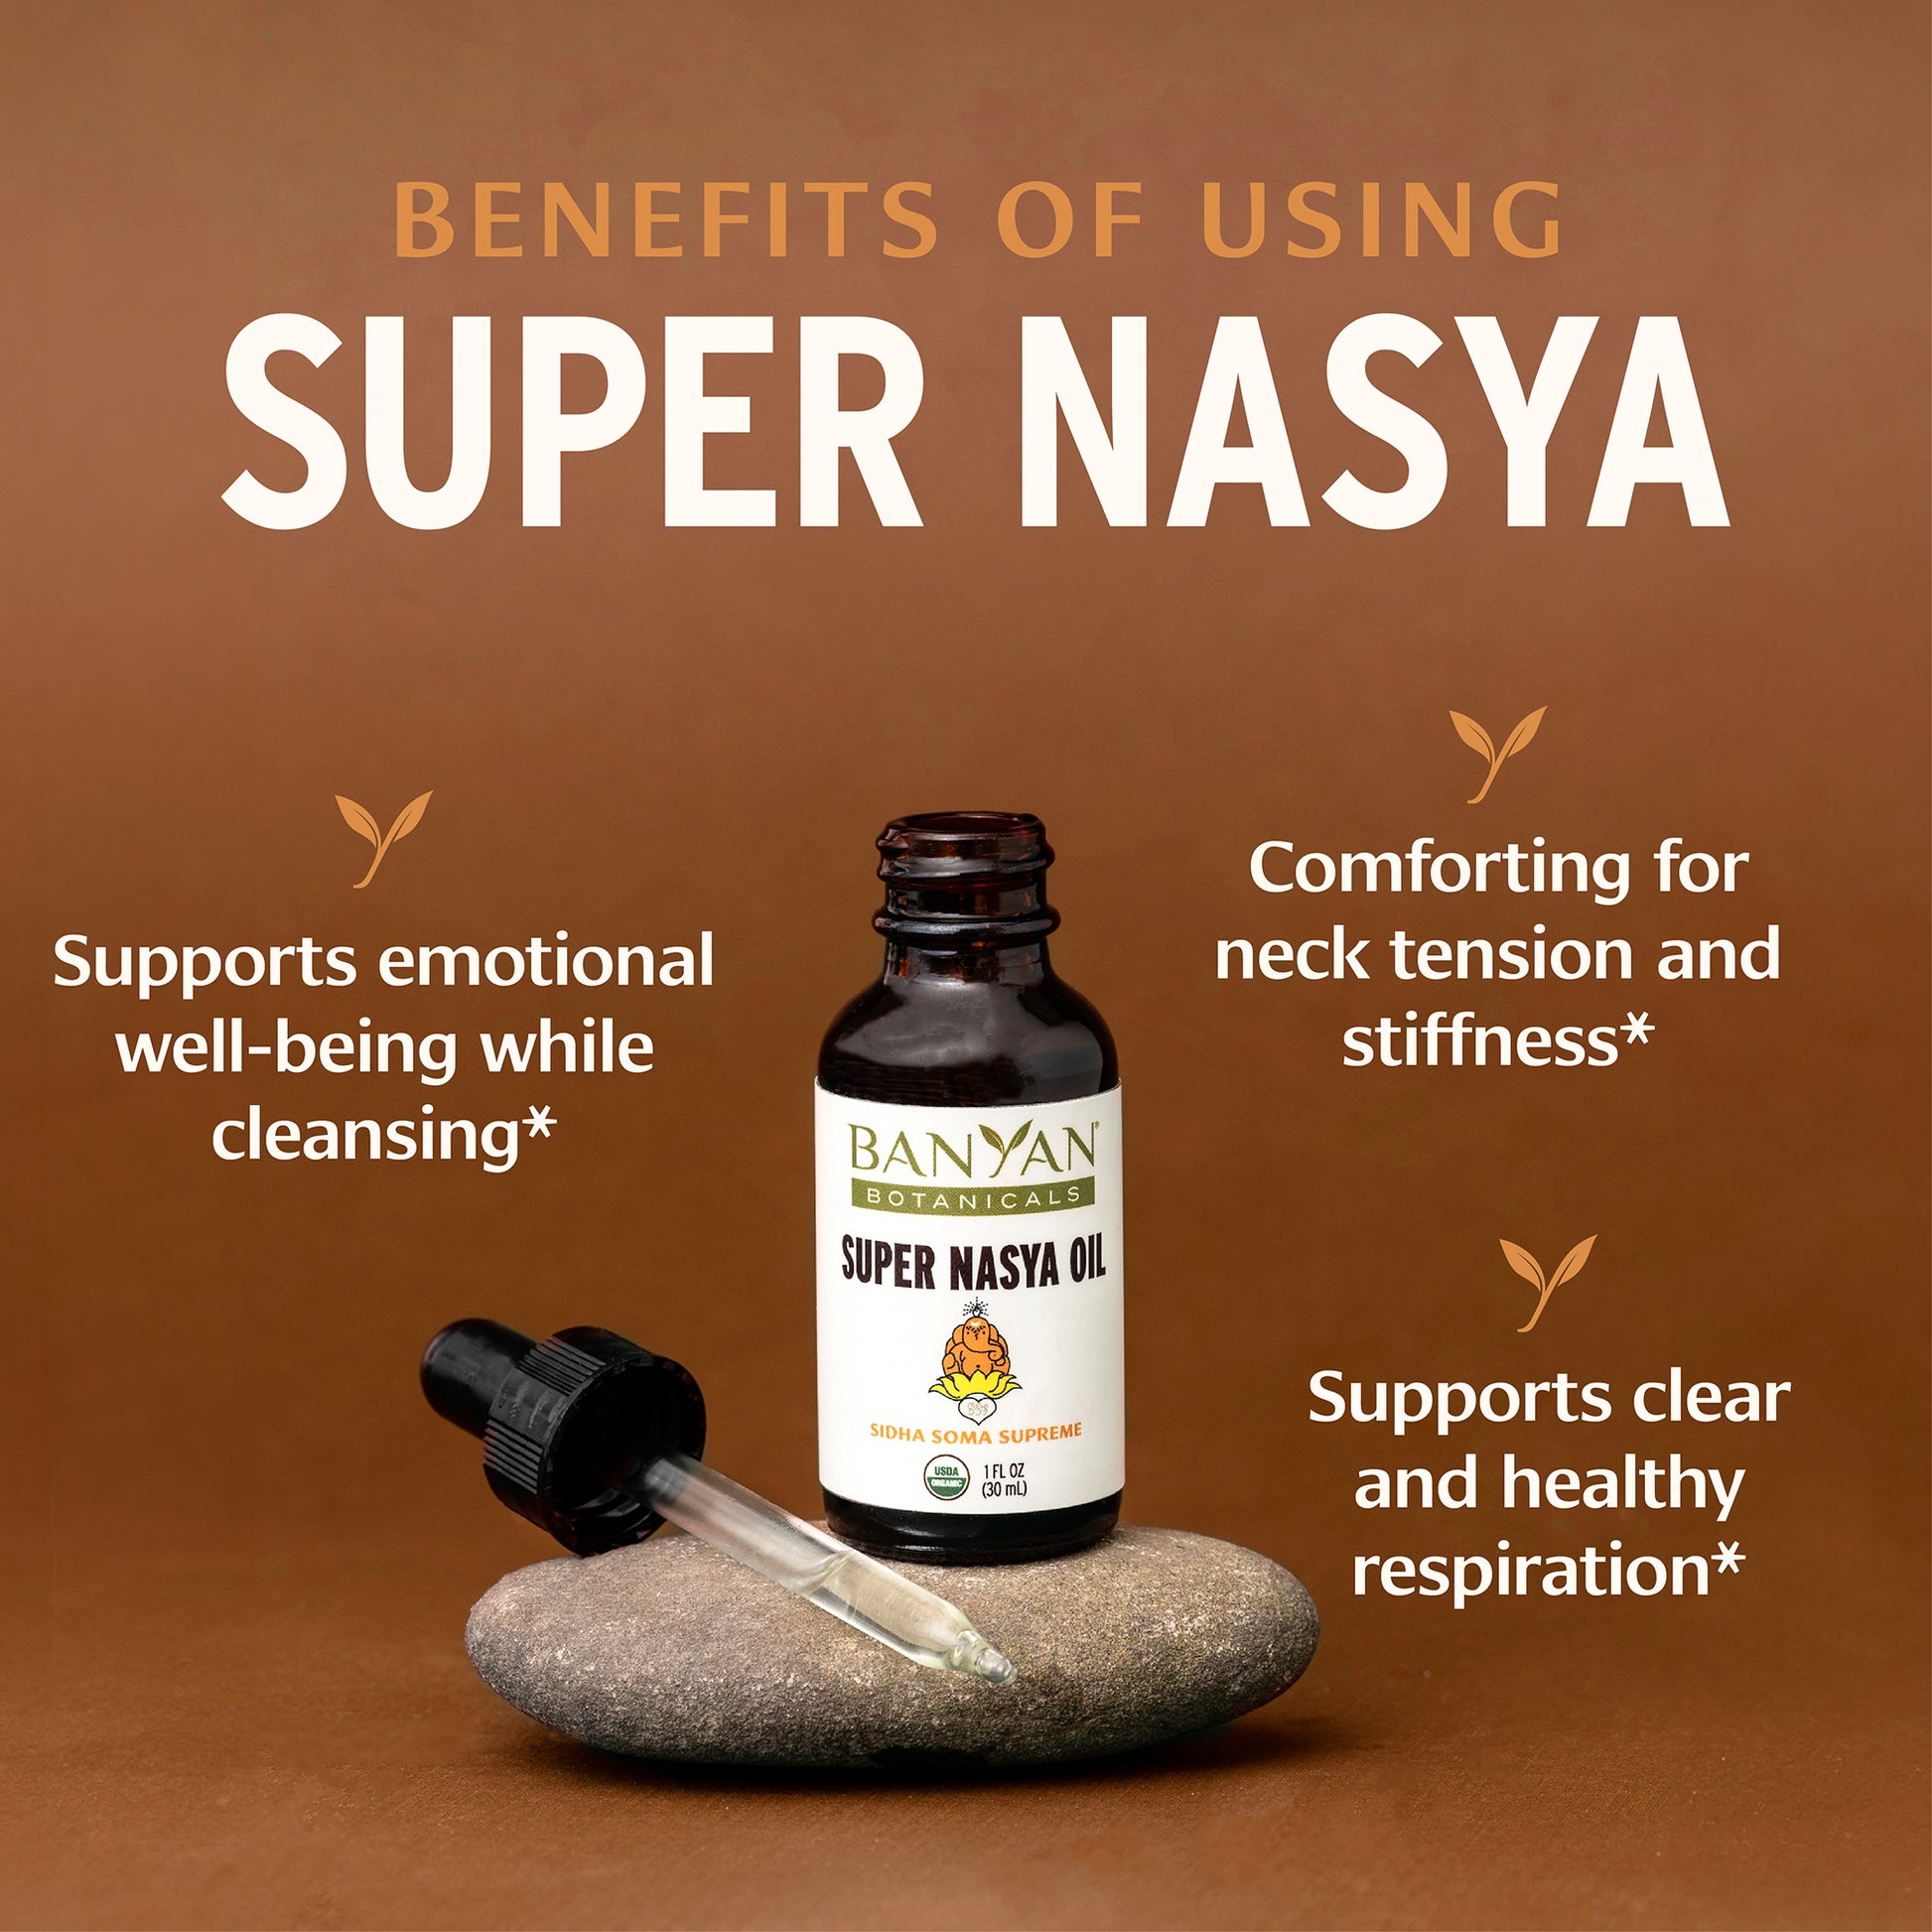 Super Nasya Oil Benefits